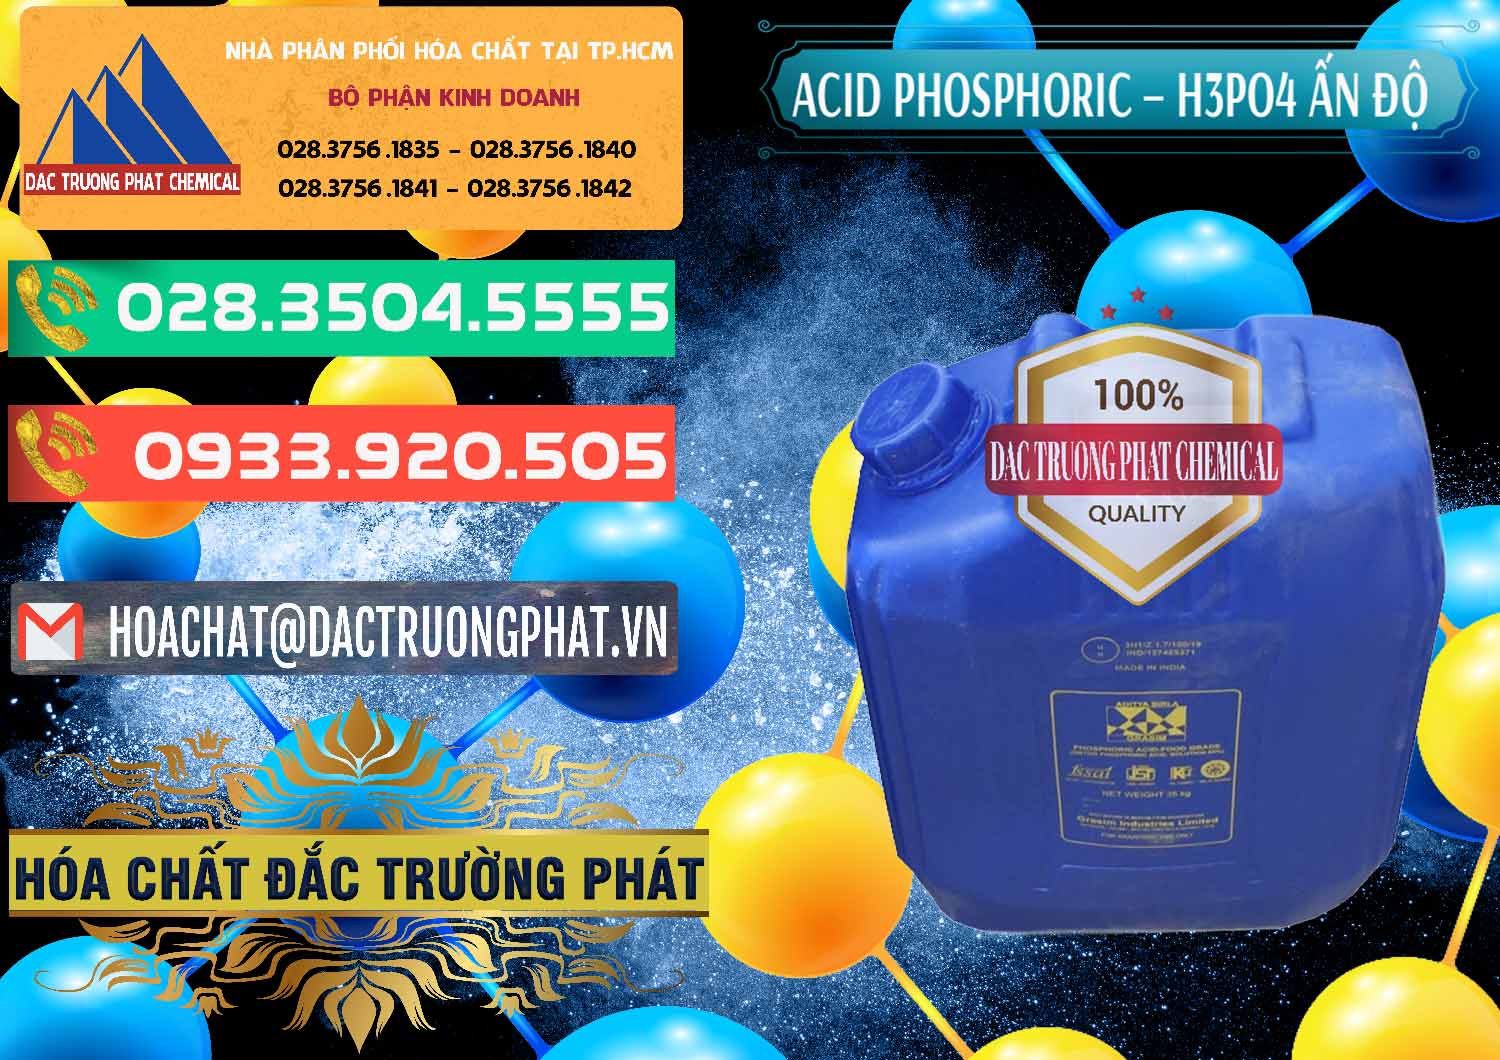 Kinh doanh _ bán Axit Phosphoric H3PO4 85% Ấn Độ - 0350 - Chuyên cung cấp & bán hóa chất tại TP.HCM - congtyhoachat.com.vn